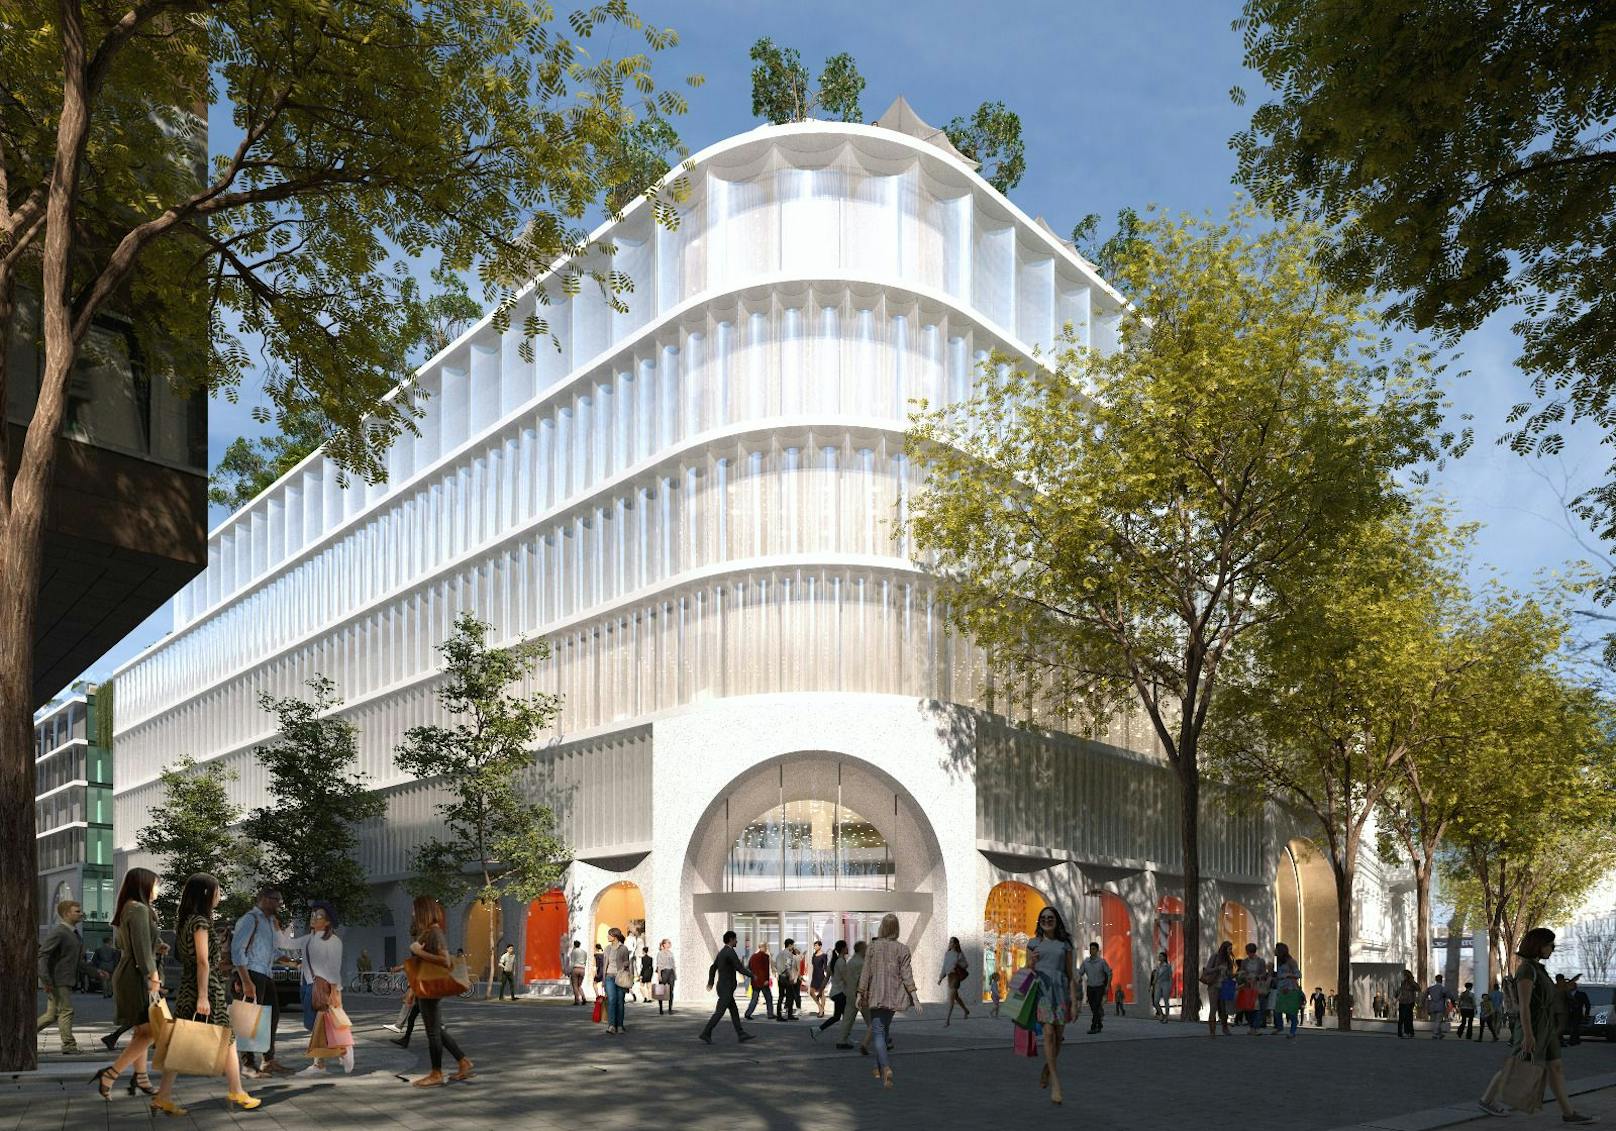 Auf der Mariahilfer Straße 10-18 will Signa ein modernes, nachhaltiges Kaufhaus nach dem Vorbilder des Berliner "KaDeWe" samt Hotel und Park am Dach errichten.